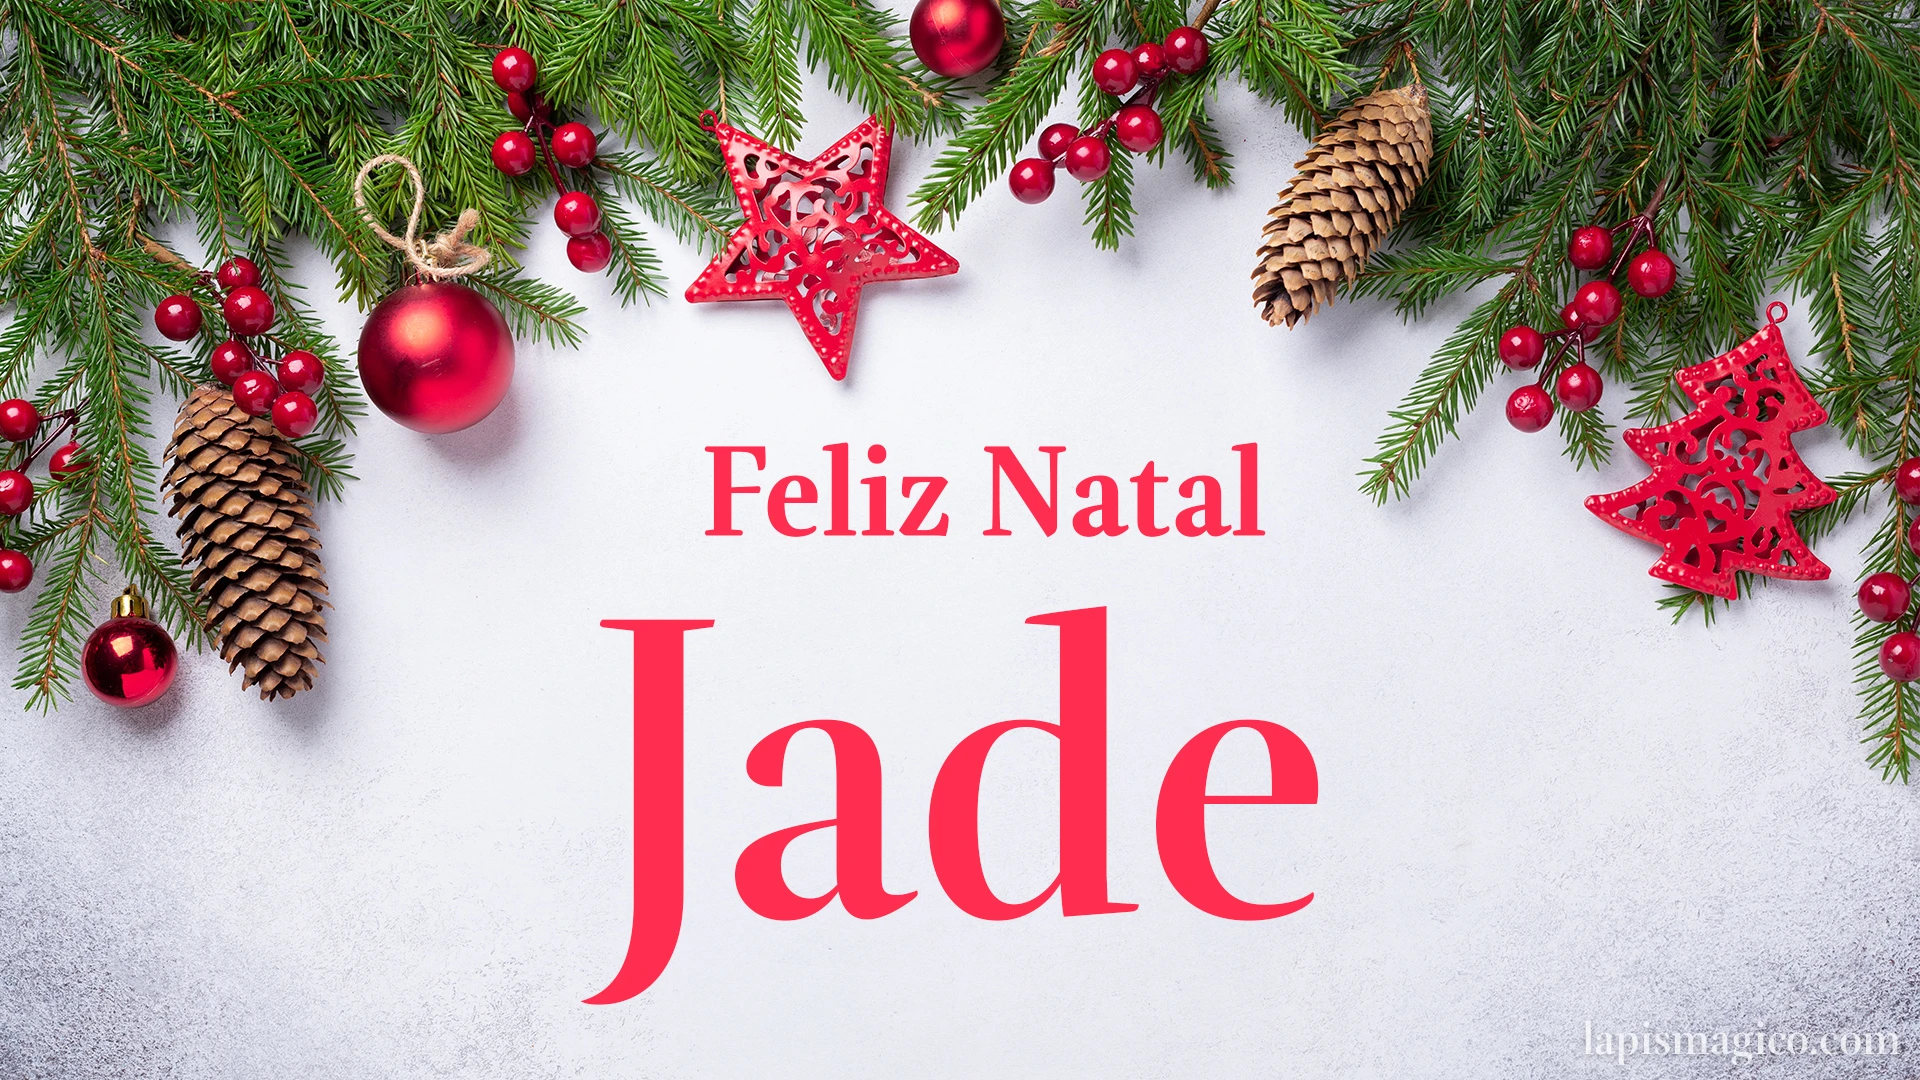 Oh Jade, cinco postais de Feliz Natal Postal com o teu nome